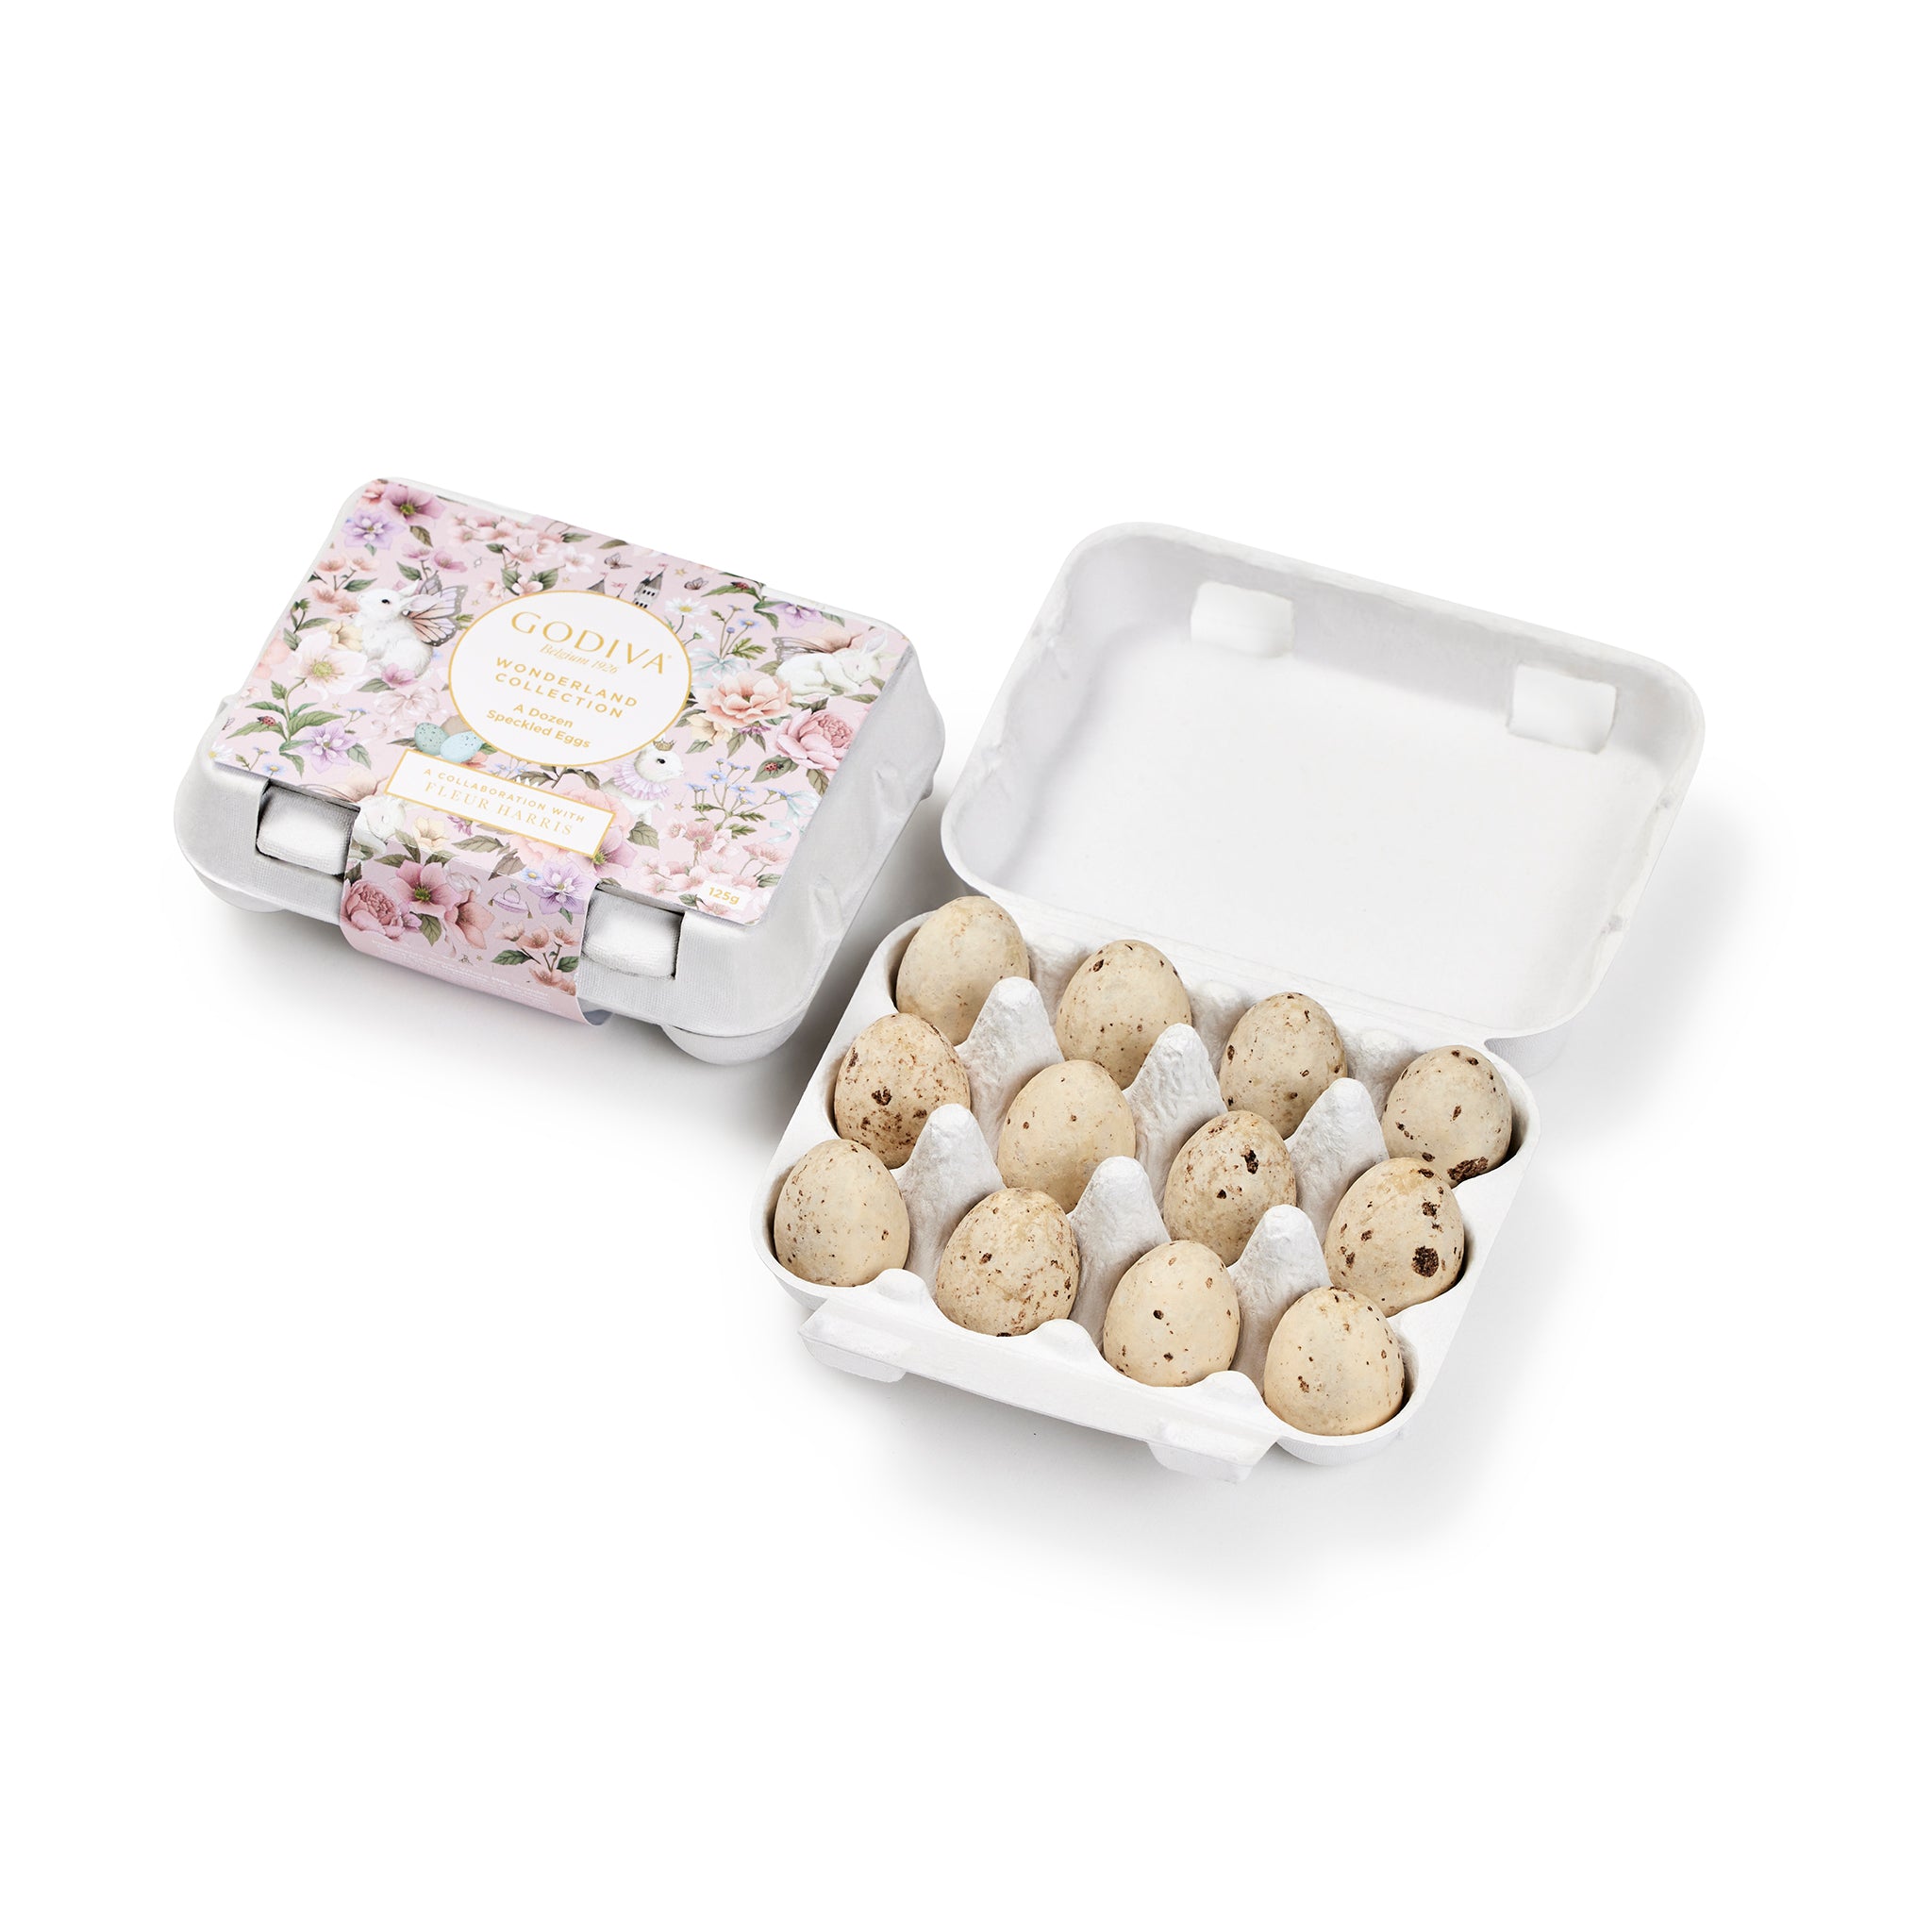 easter-chocolate-gift-box-dozen-eggs-speckled-120g-1.jpg